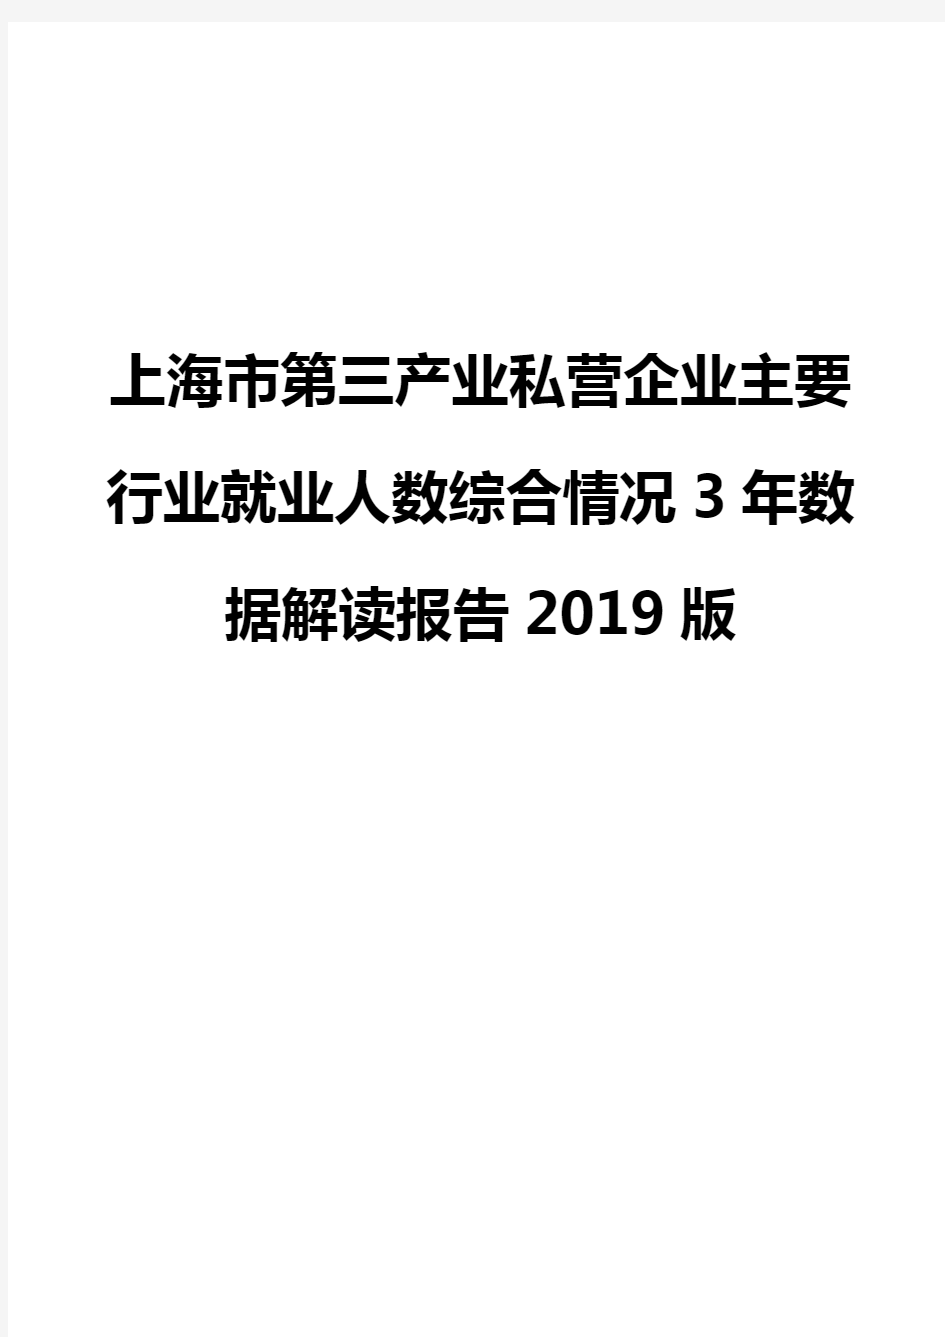 上海市第三产业私营企业主要行业就业人数综合情况3年数据解读报告2019版